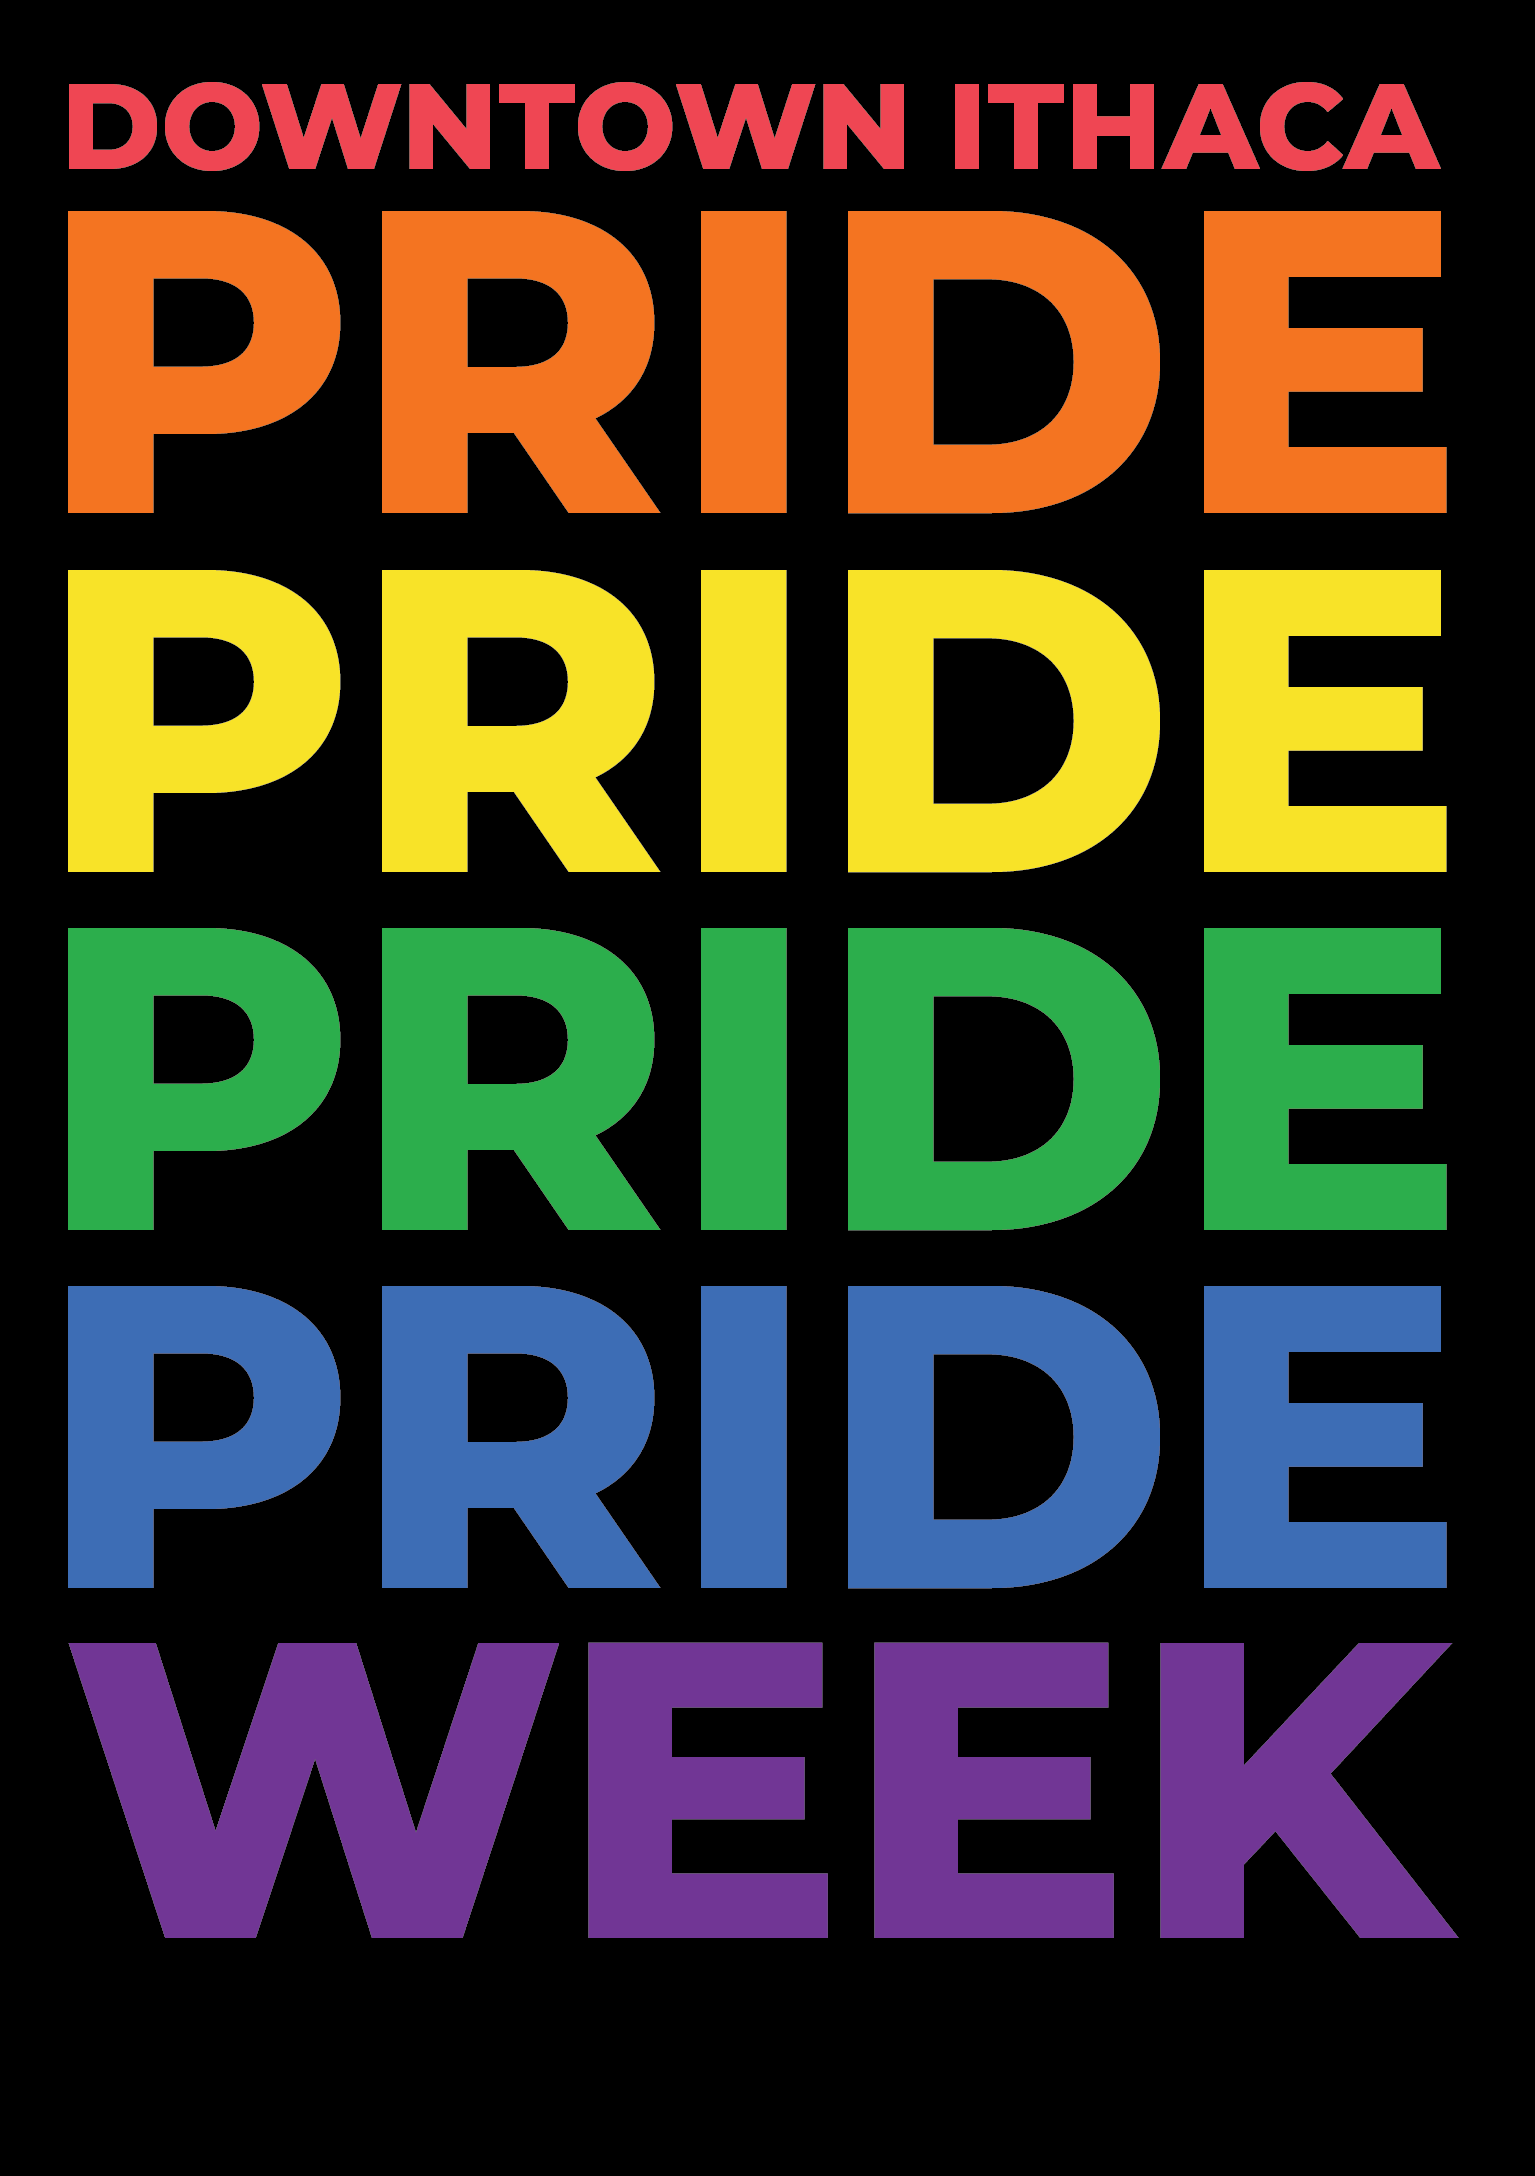 Downtown Ithaca Pride Week